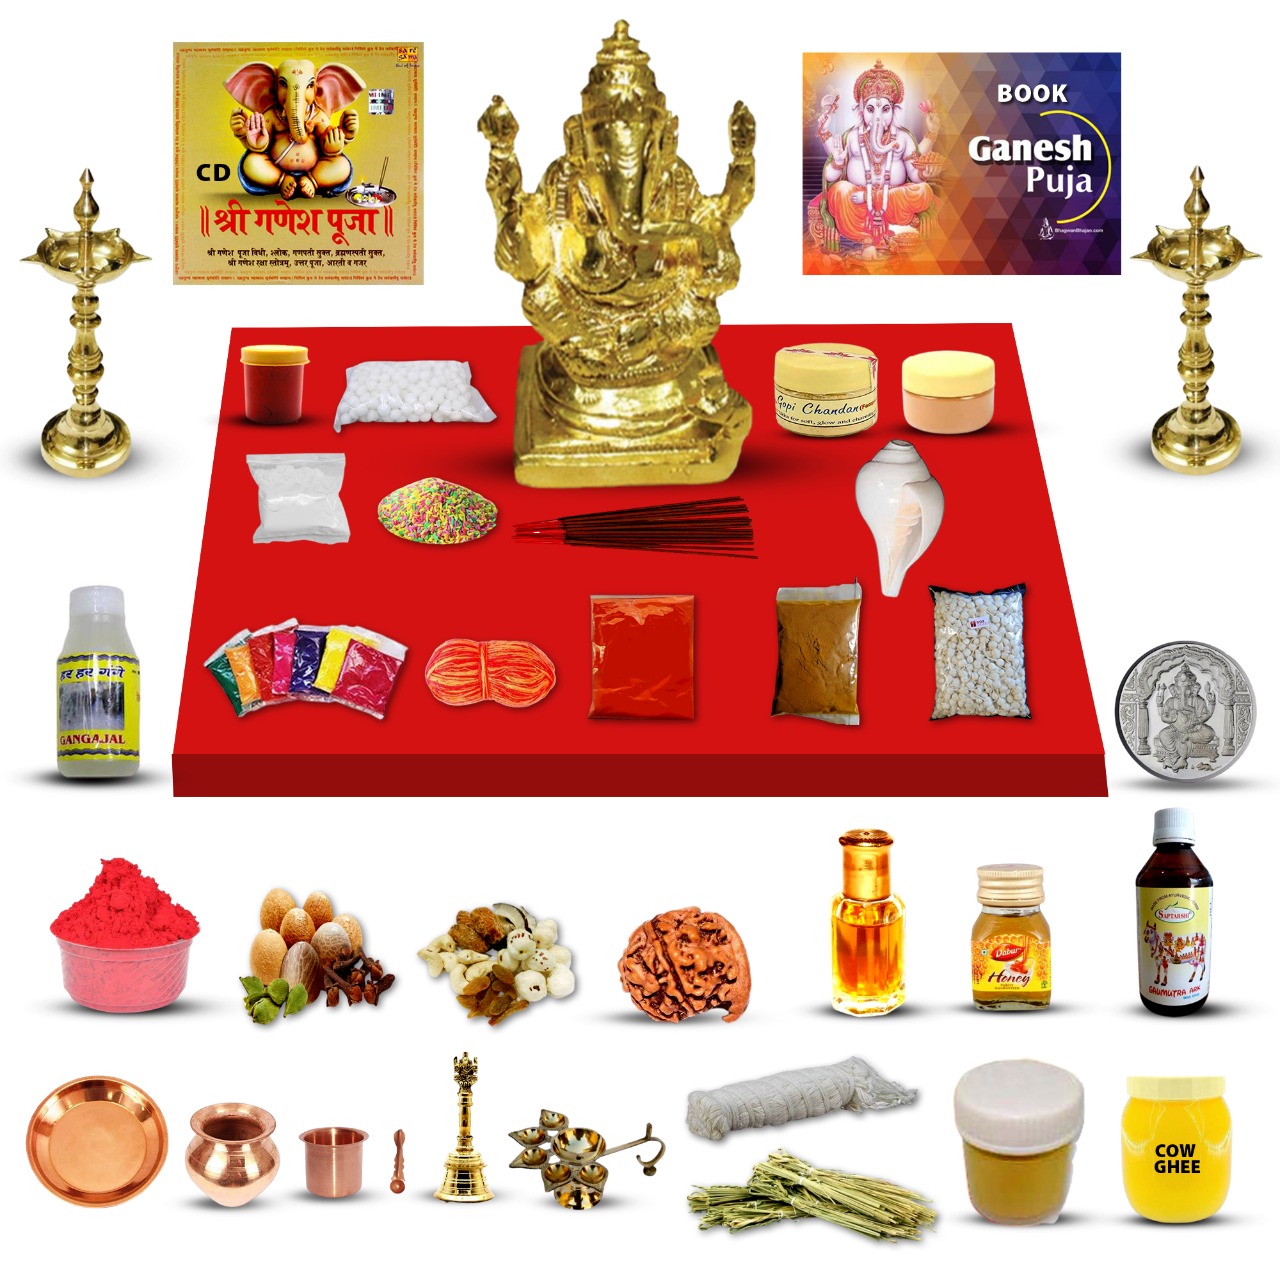 Sampoorna Ganesha Puja Kit - Delivery in India